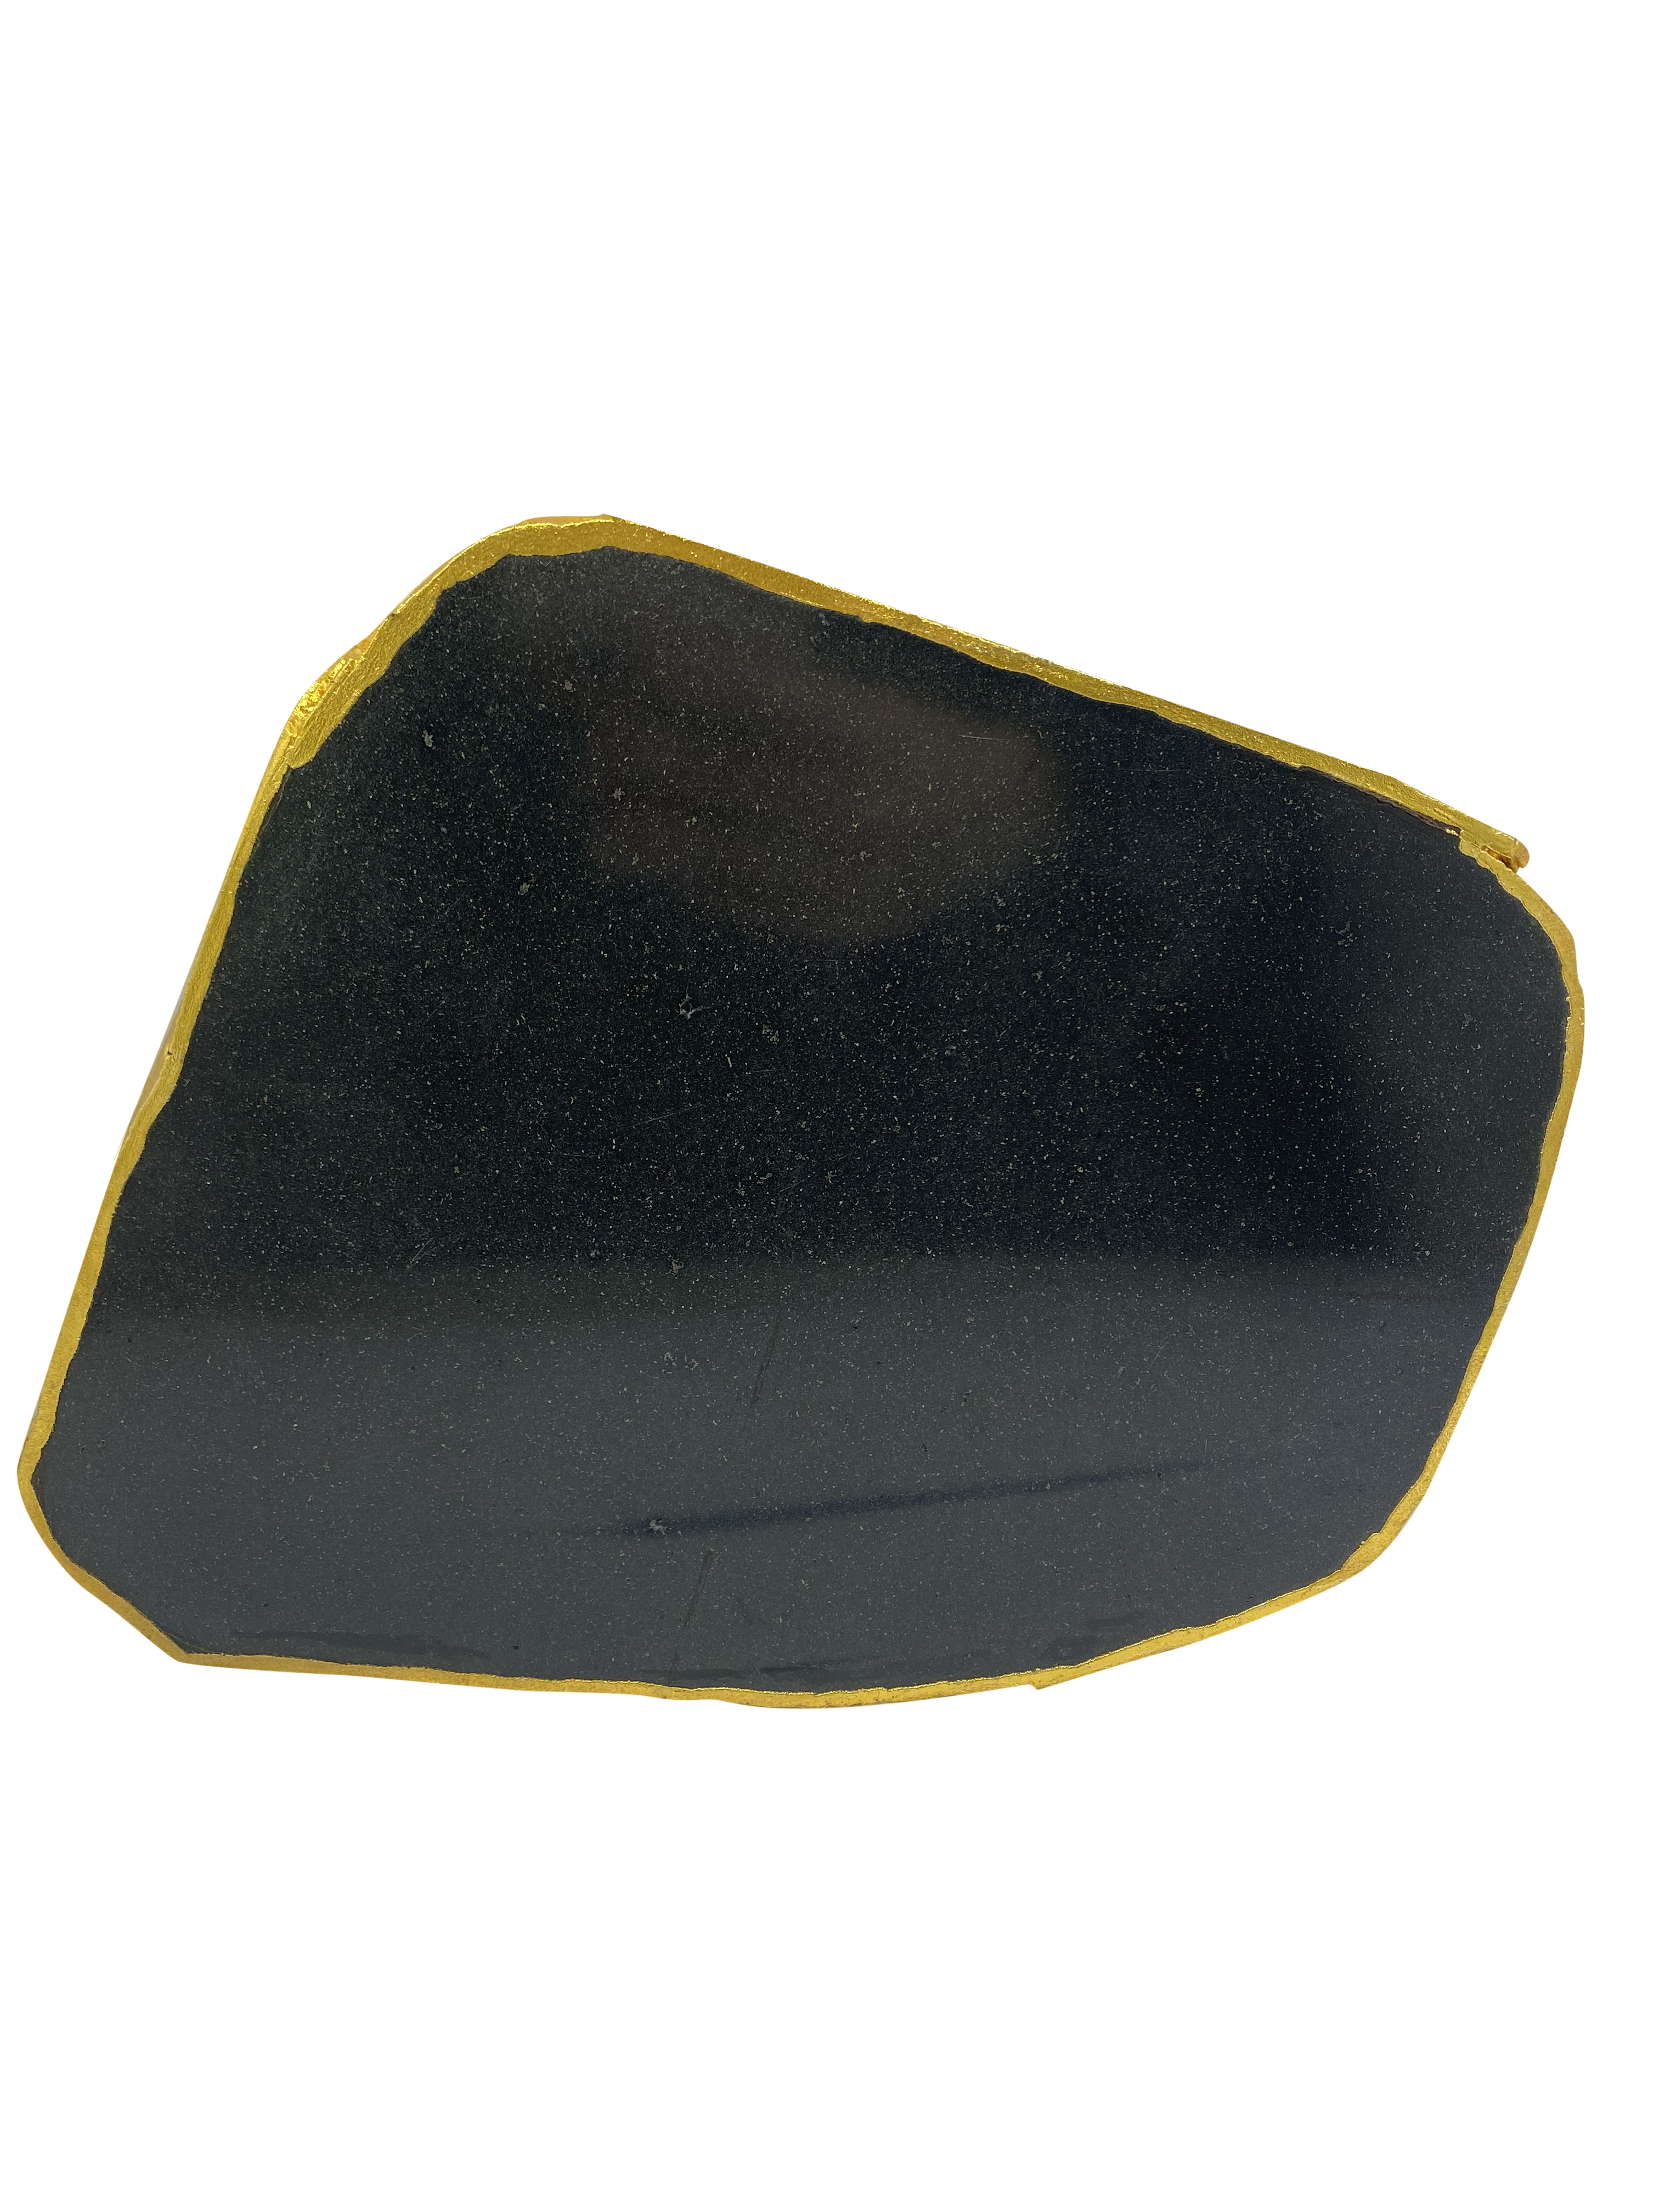 Black Agate Crystal Plater D - 1.6KG